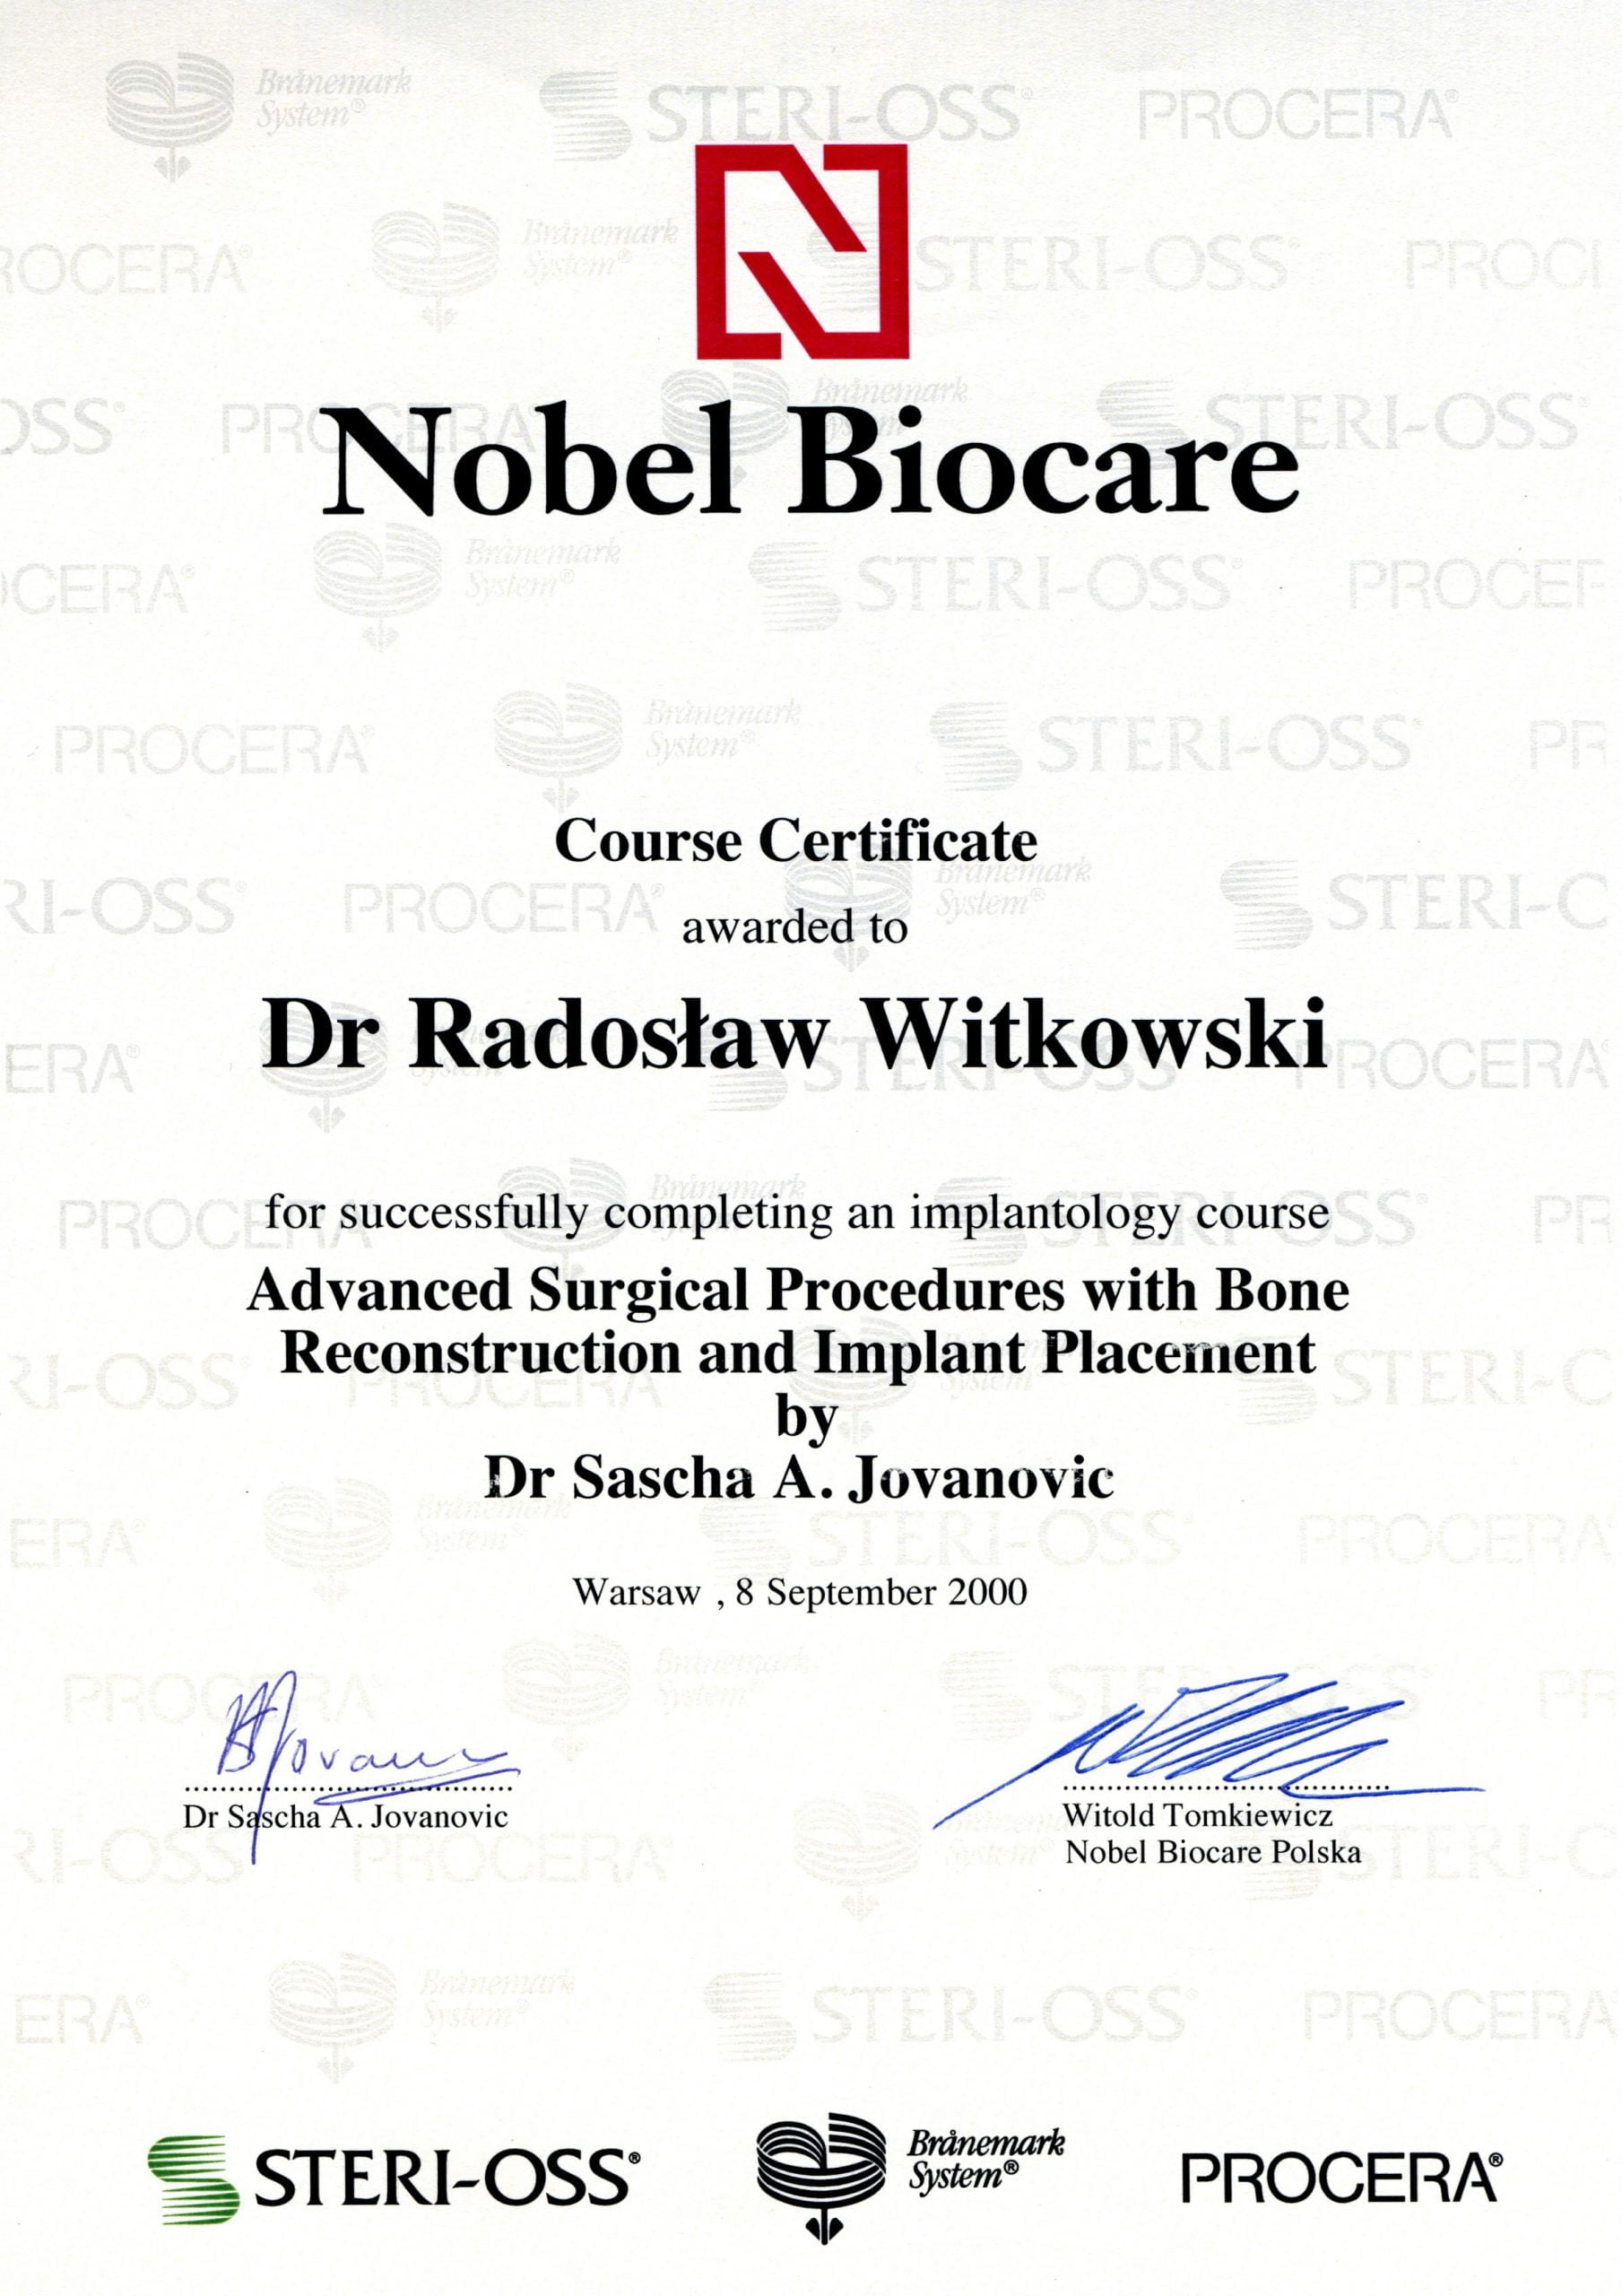 Radosław Witkowski certyfikat 23